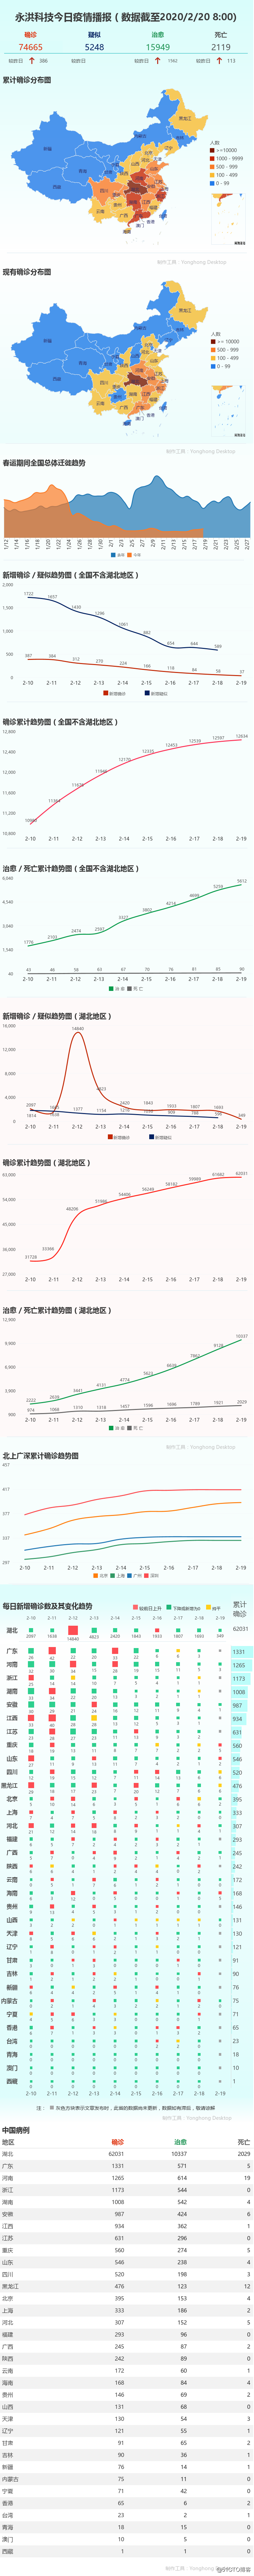 2月20日放送の流行を|武漢大底引き網調査が終了し、湖北省の新しい症例が349に下がりました